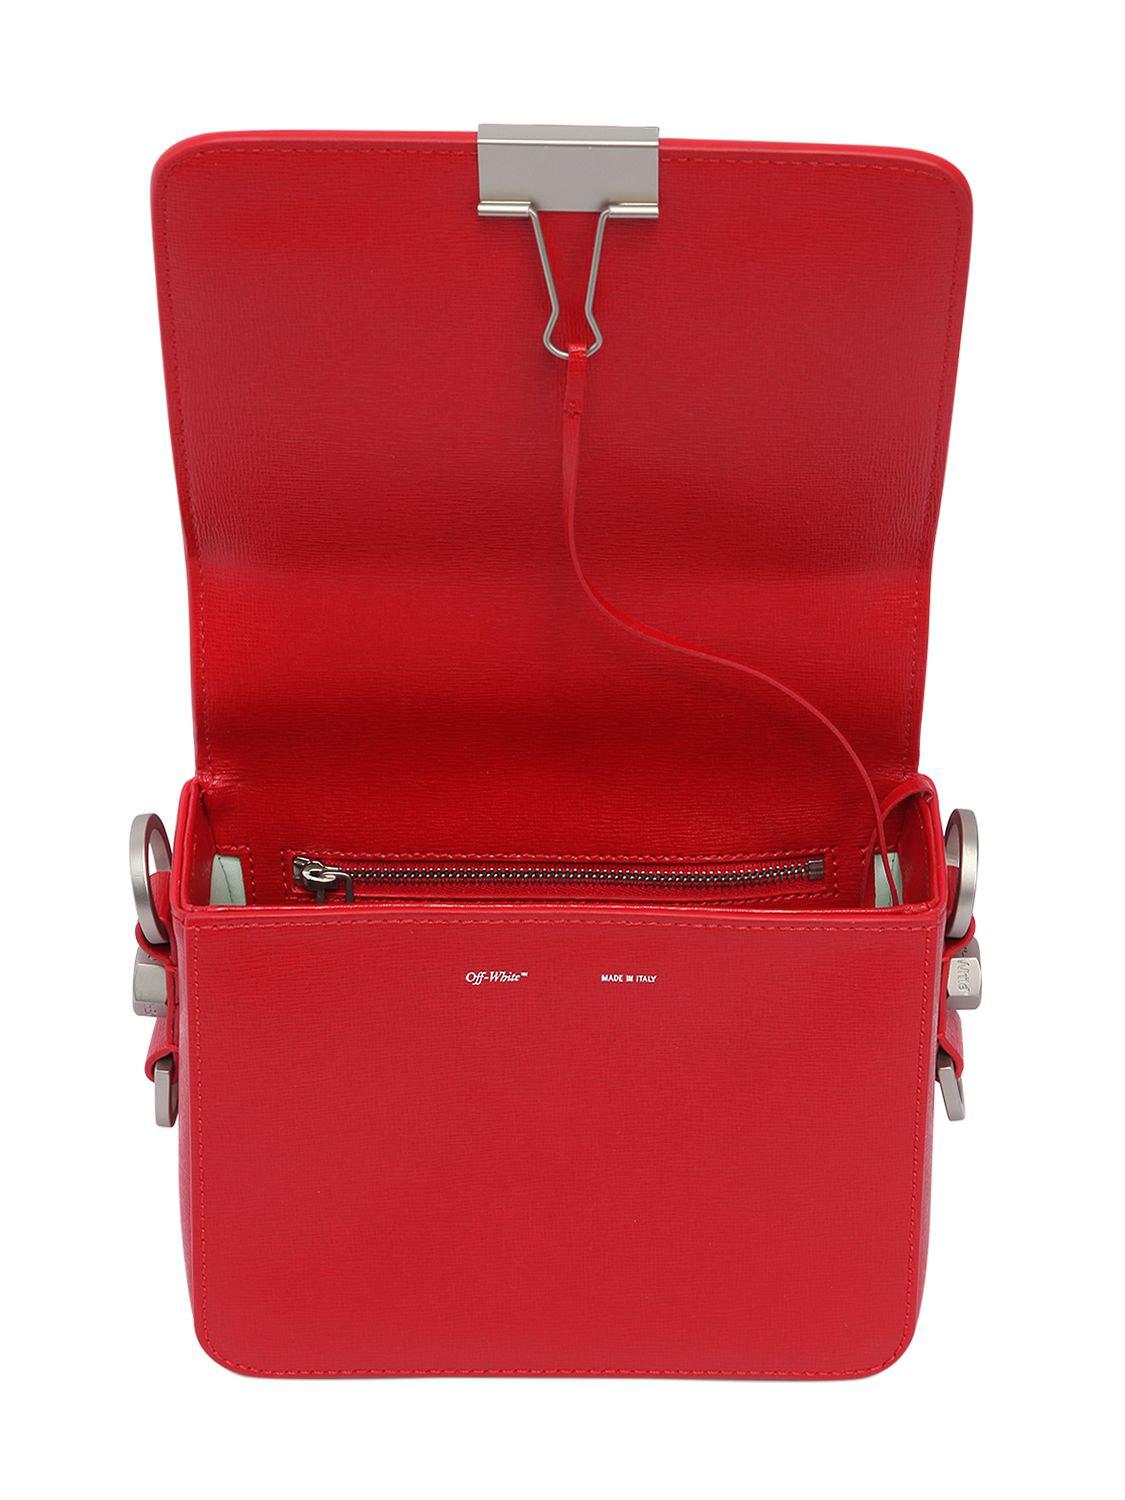 Off-White c/o Virgil Abloh Binder Clip Leather Shoulder Bag in Red - Lyst